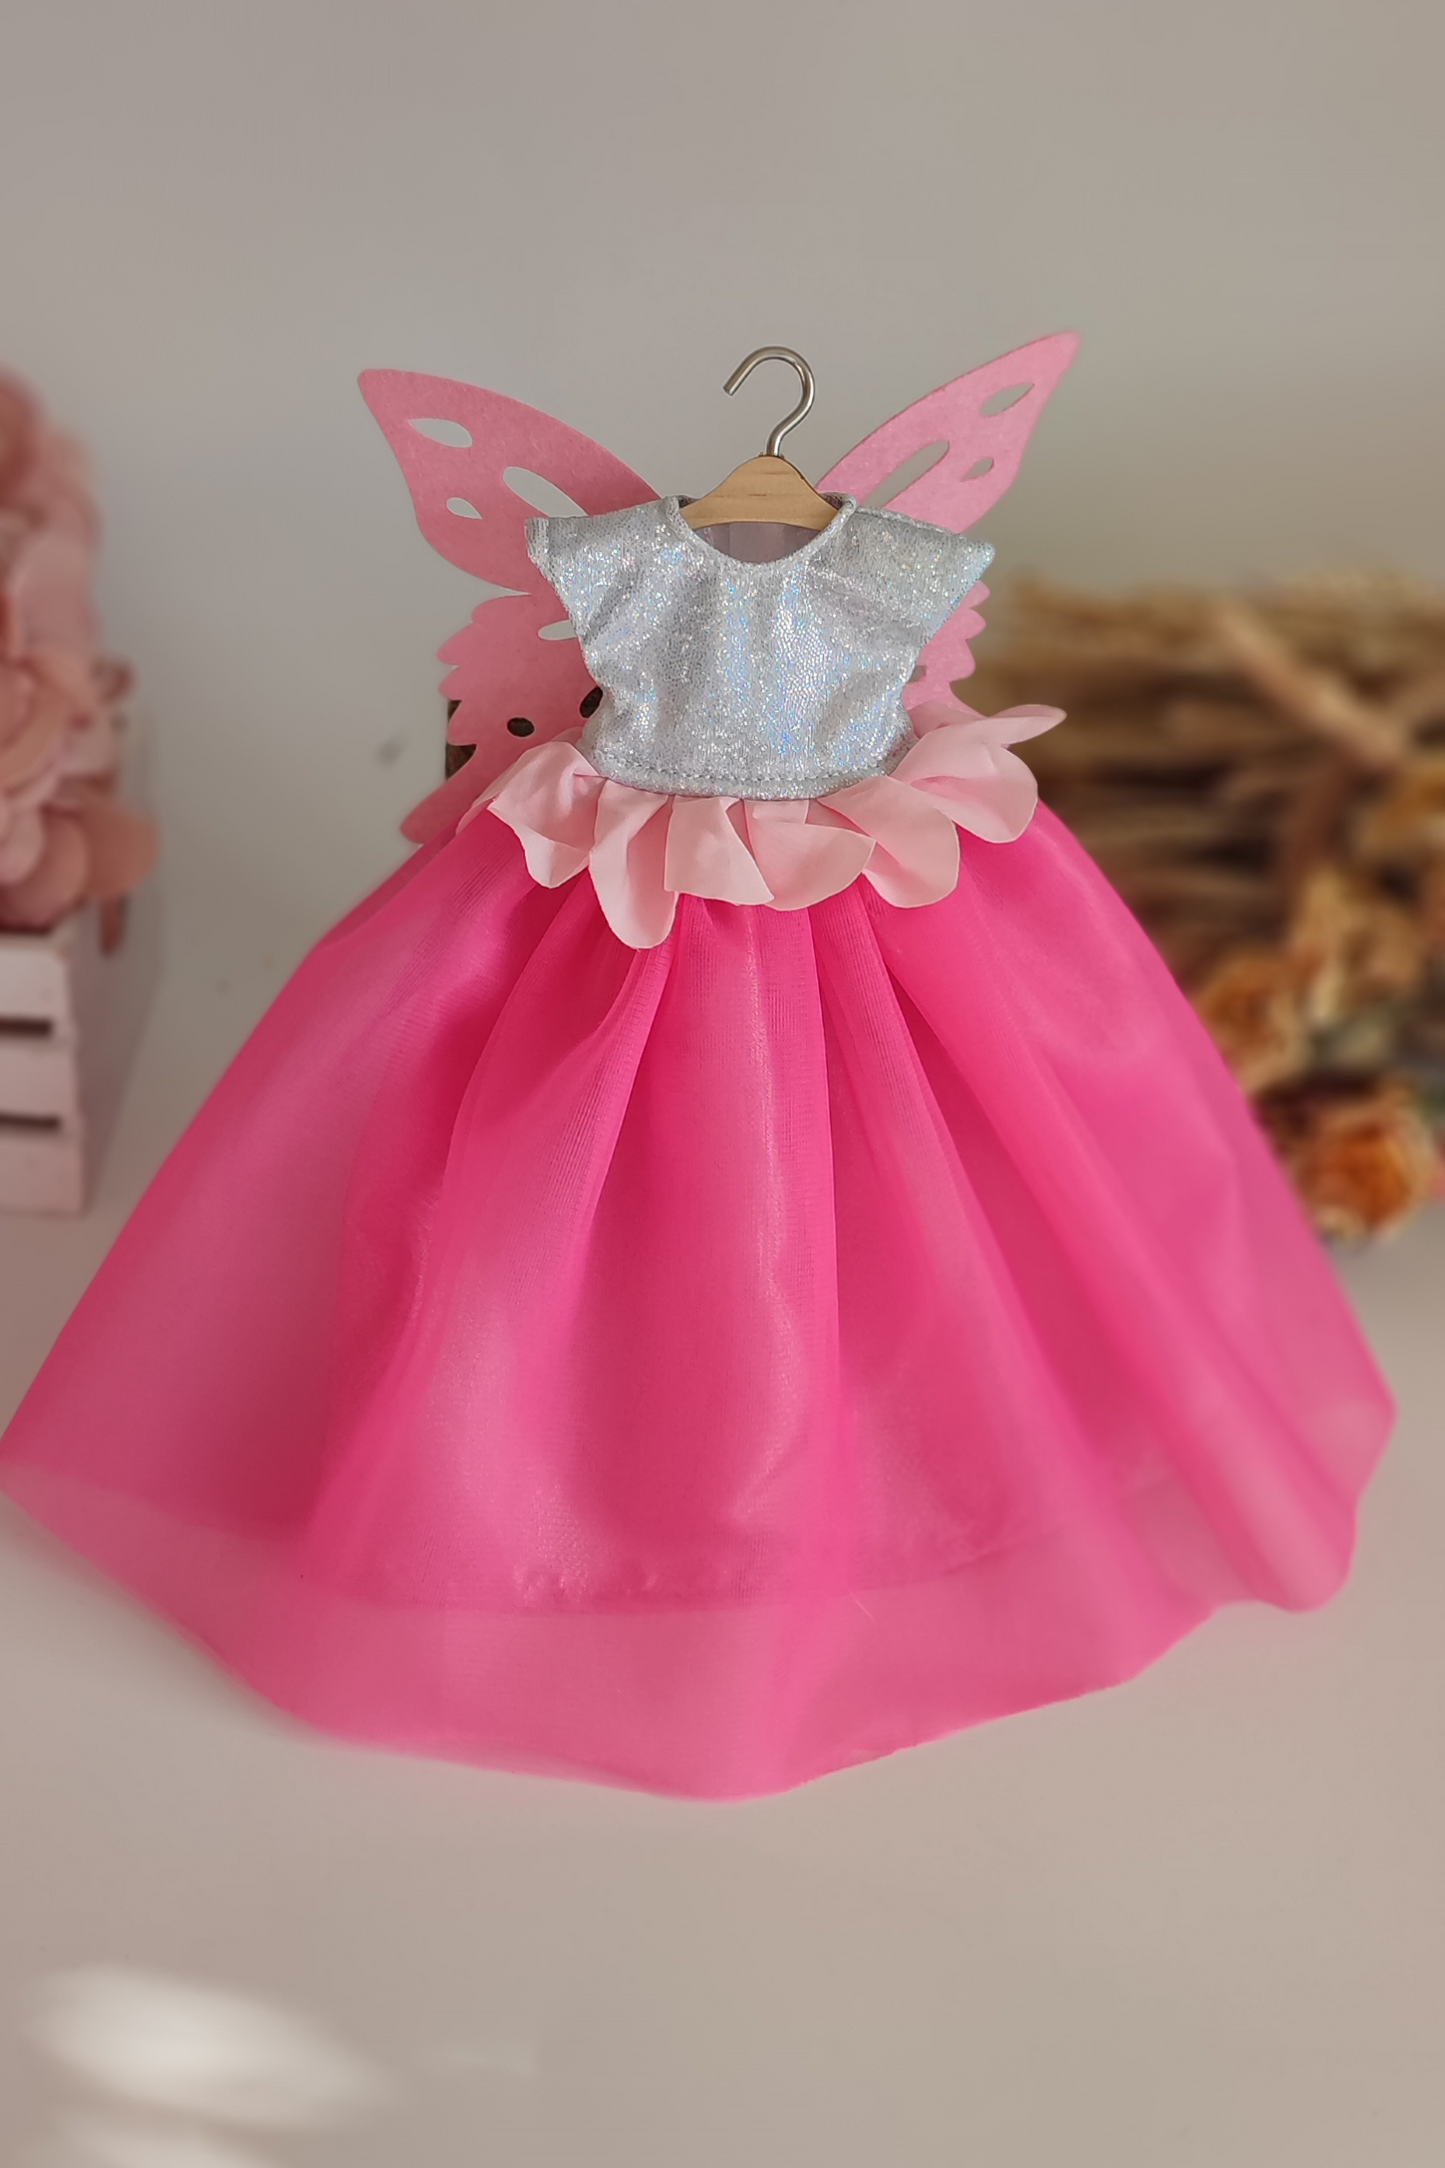 Fairy doll dress